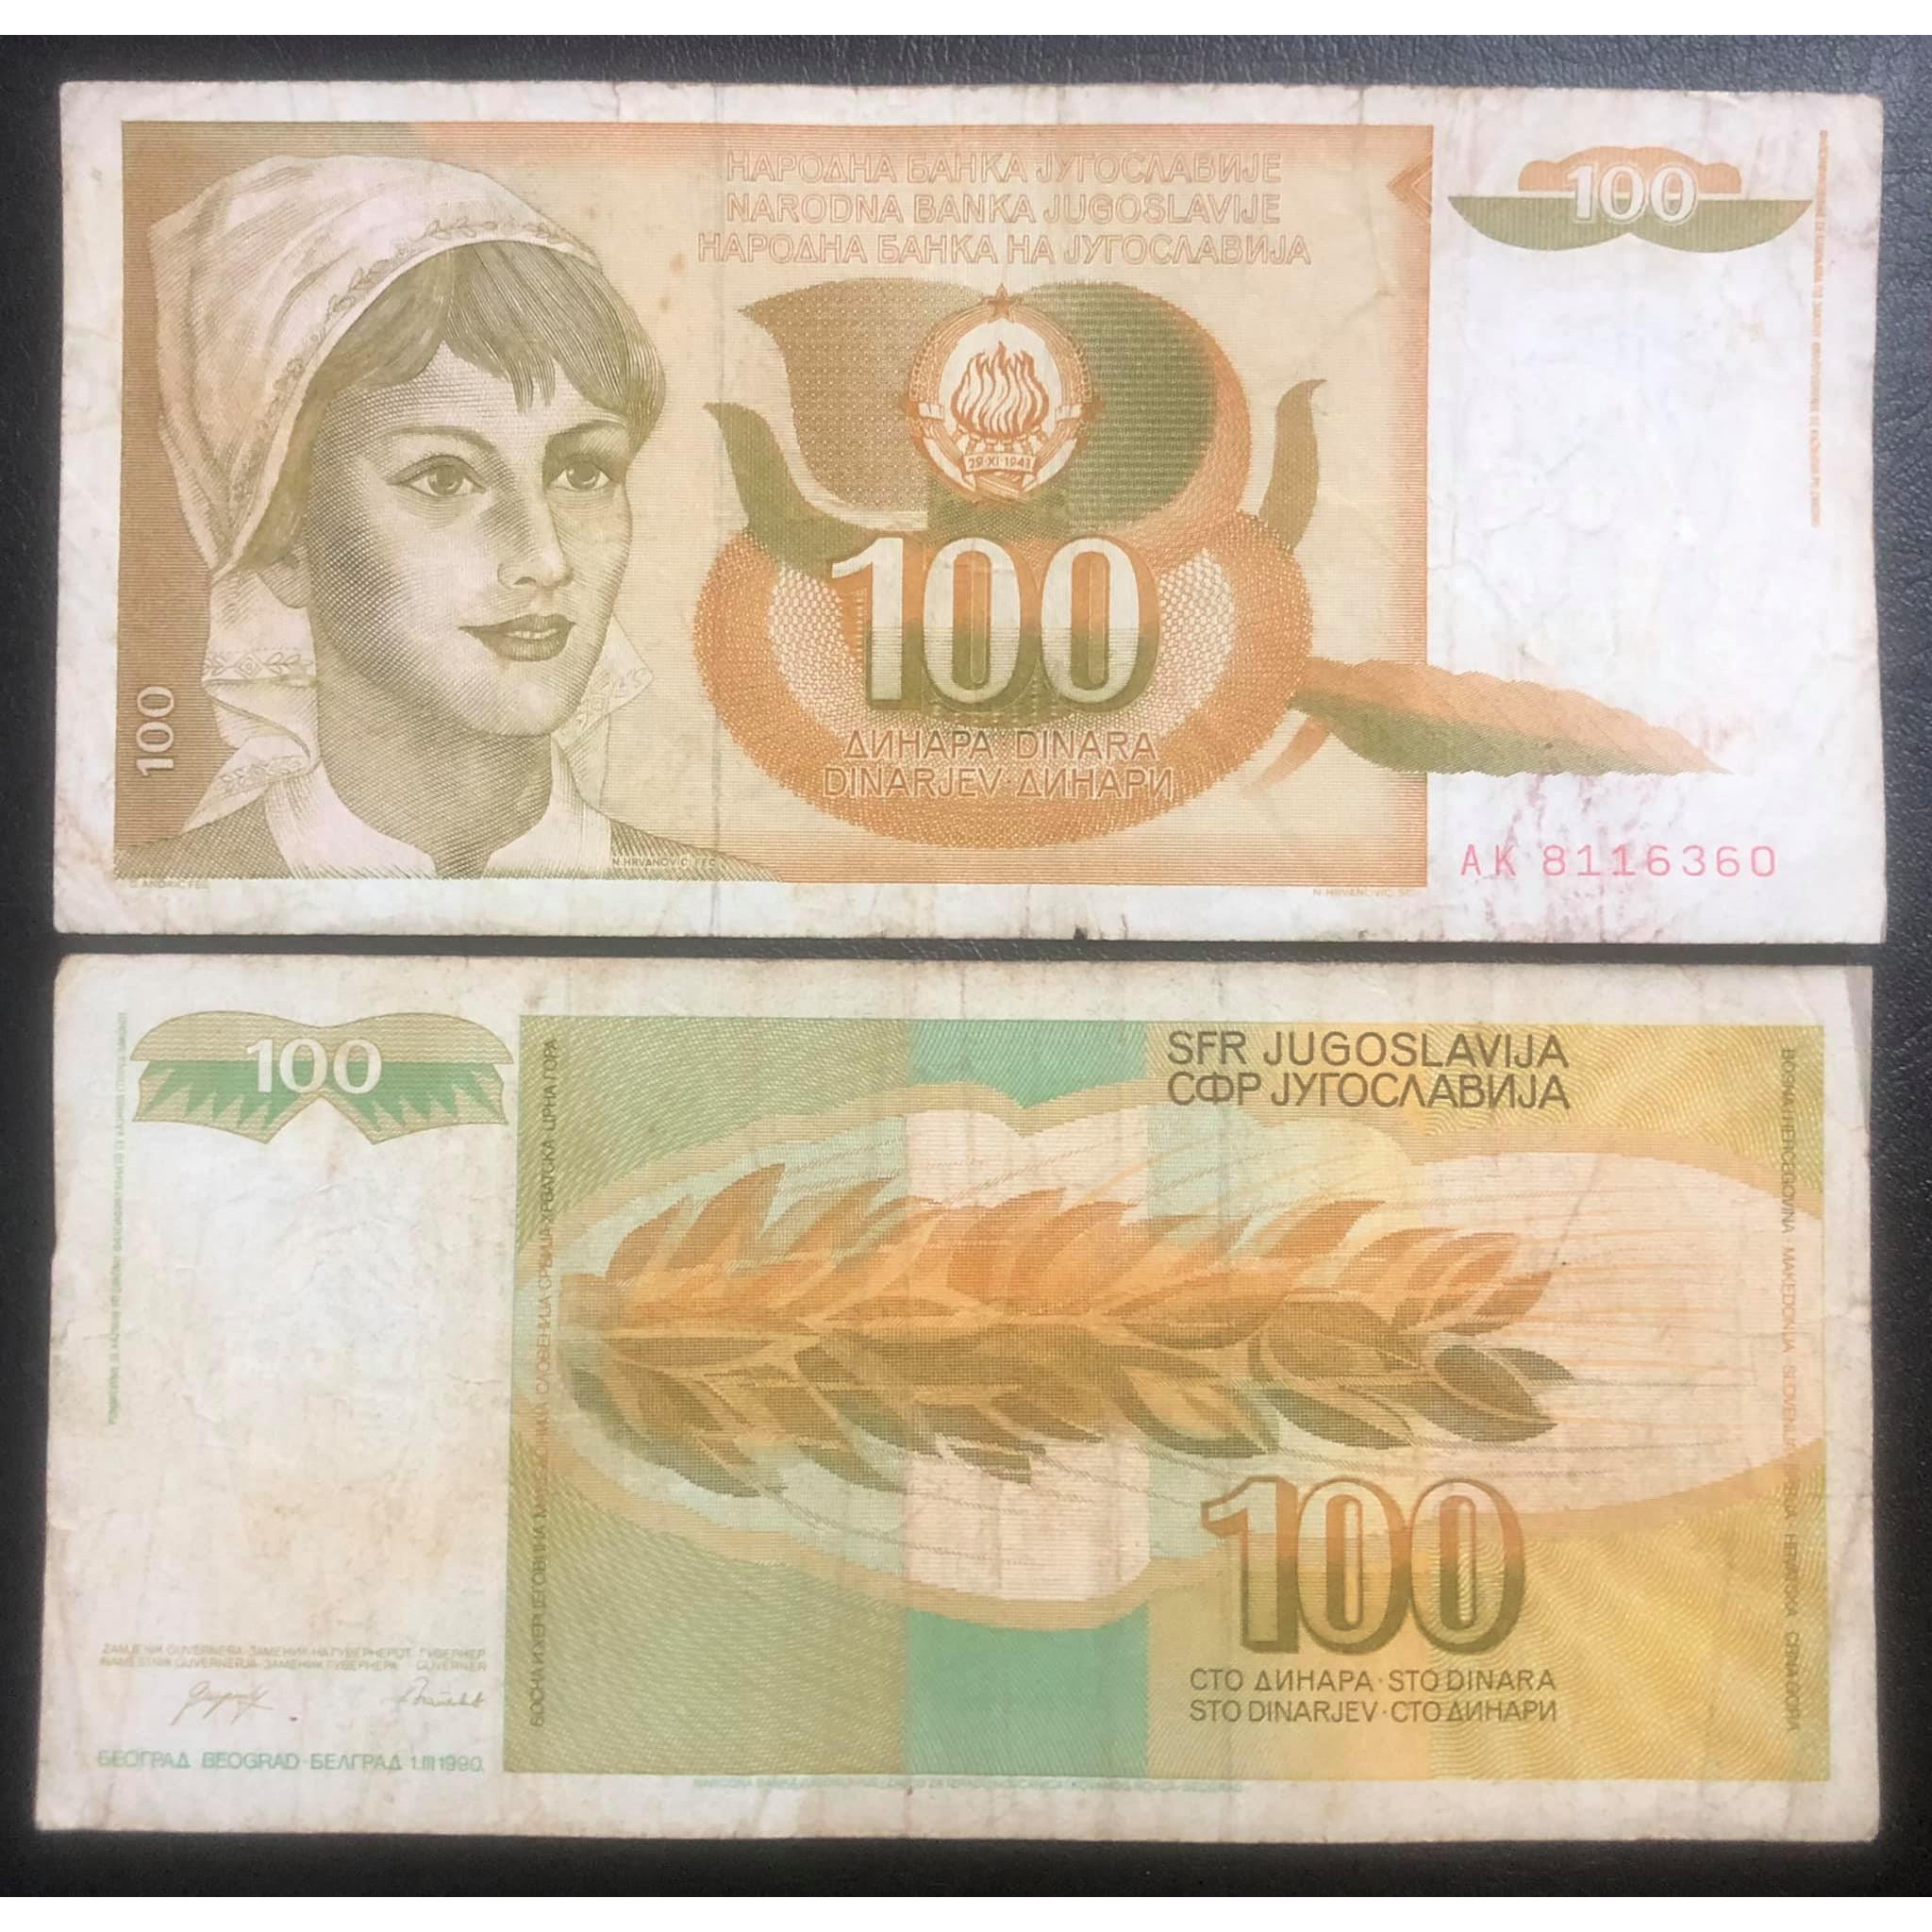 Tiền châu Âu 100 dinara của Nam Tư cũ